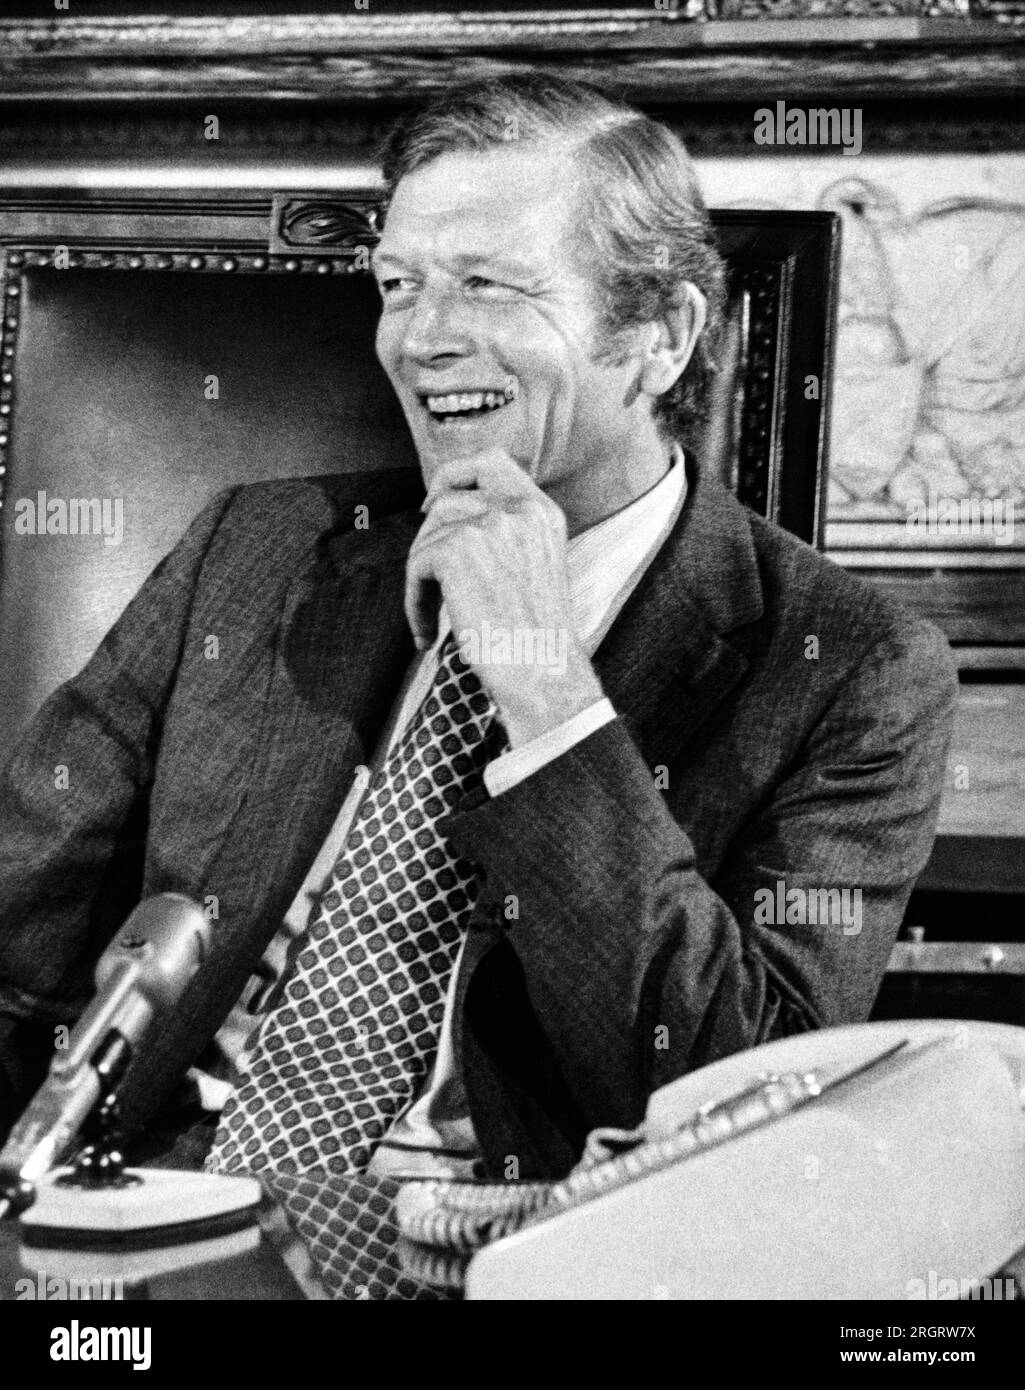 New York, New York: September 30, 1971 Mayor John Lindsay smiles during ...